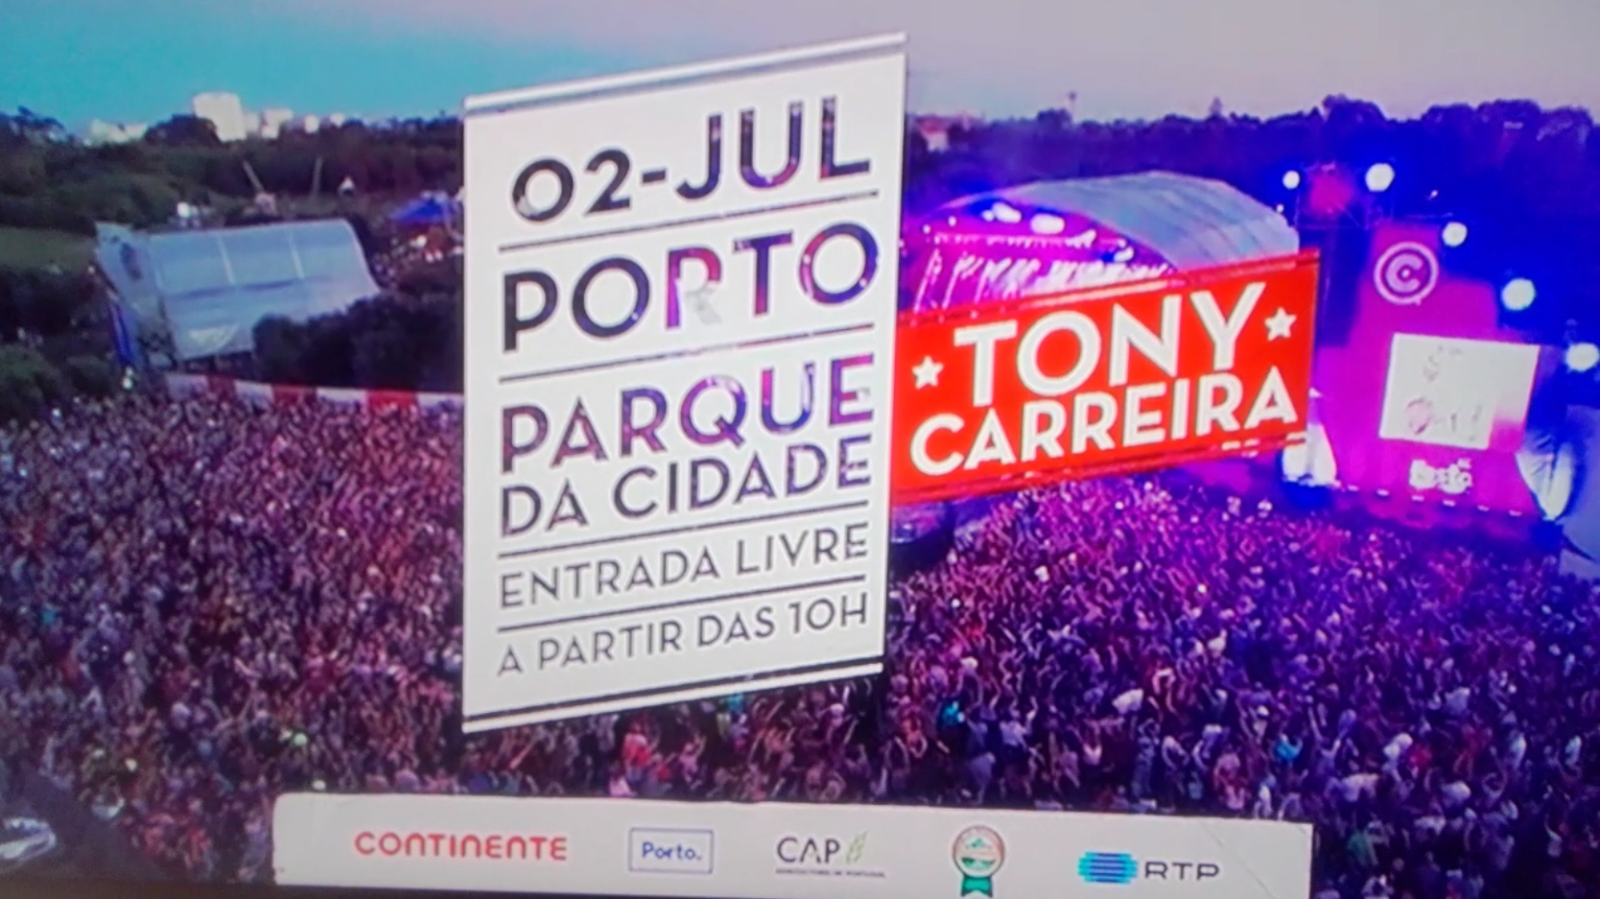 Festa Continente 2016 no Porto